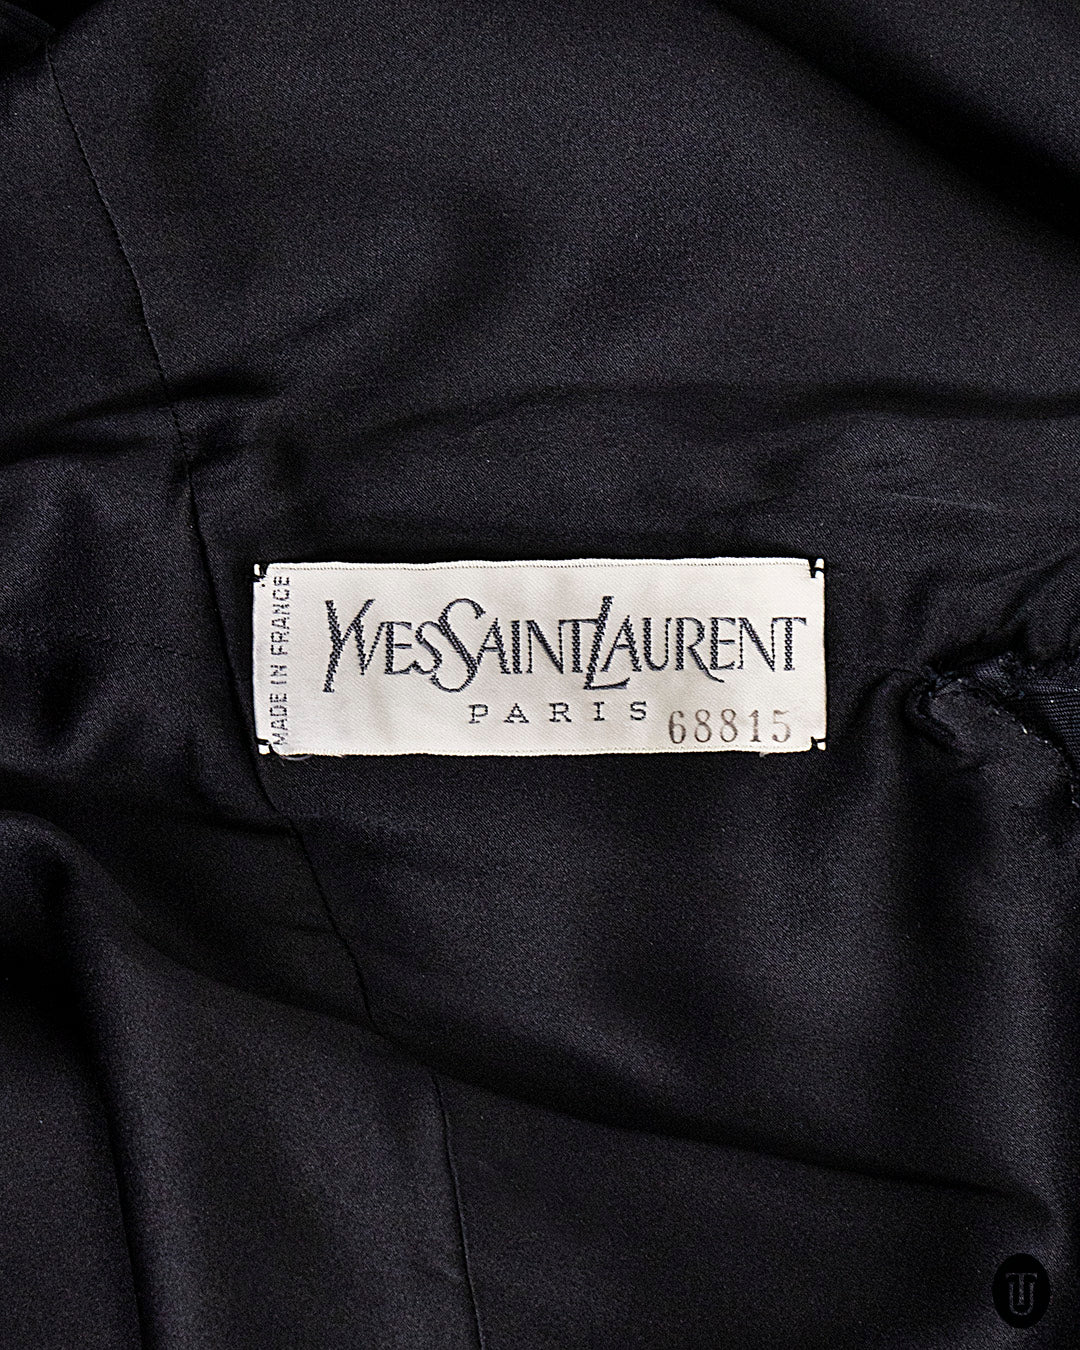 1980s Yves Saint Laurent Black Haute Couture Sack Dress S